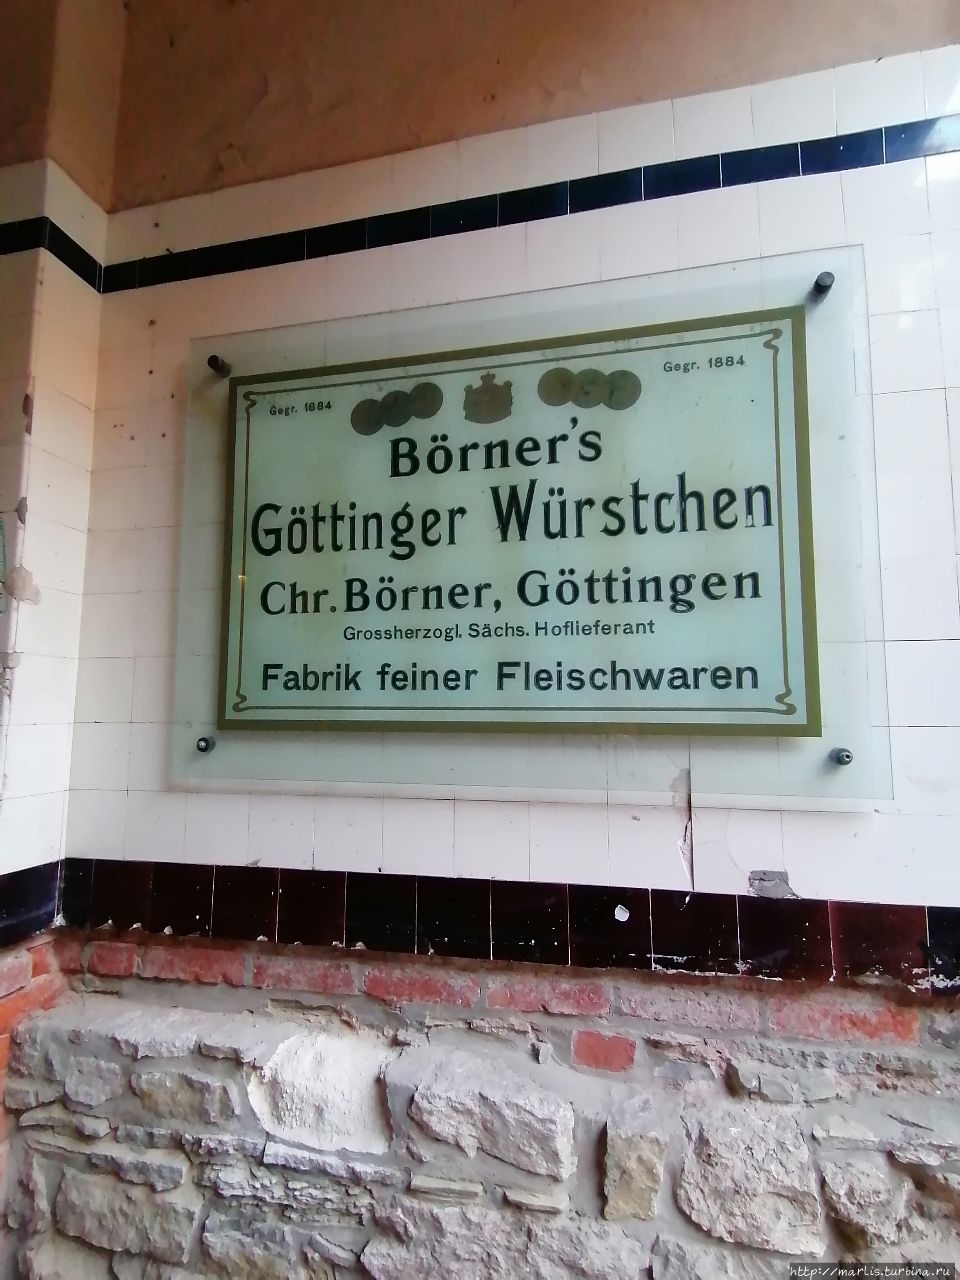 Страхоотвод, фахверк  и другие интересности Гёттингена Гёттинген, Германия